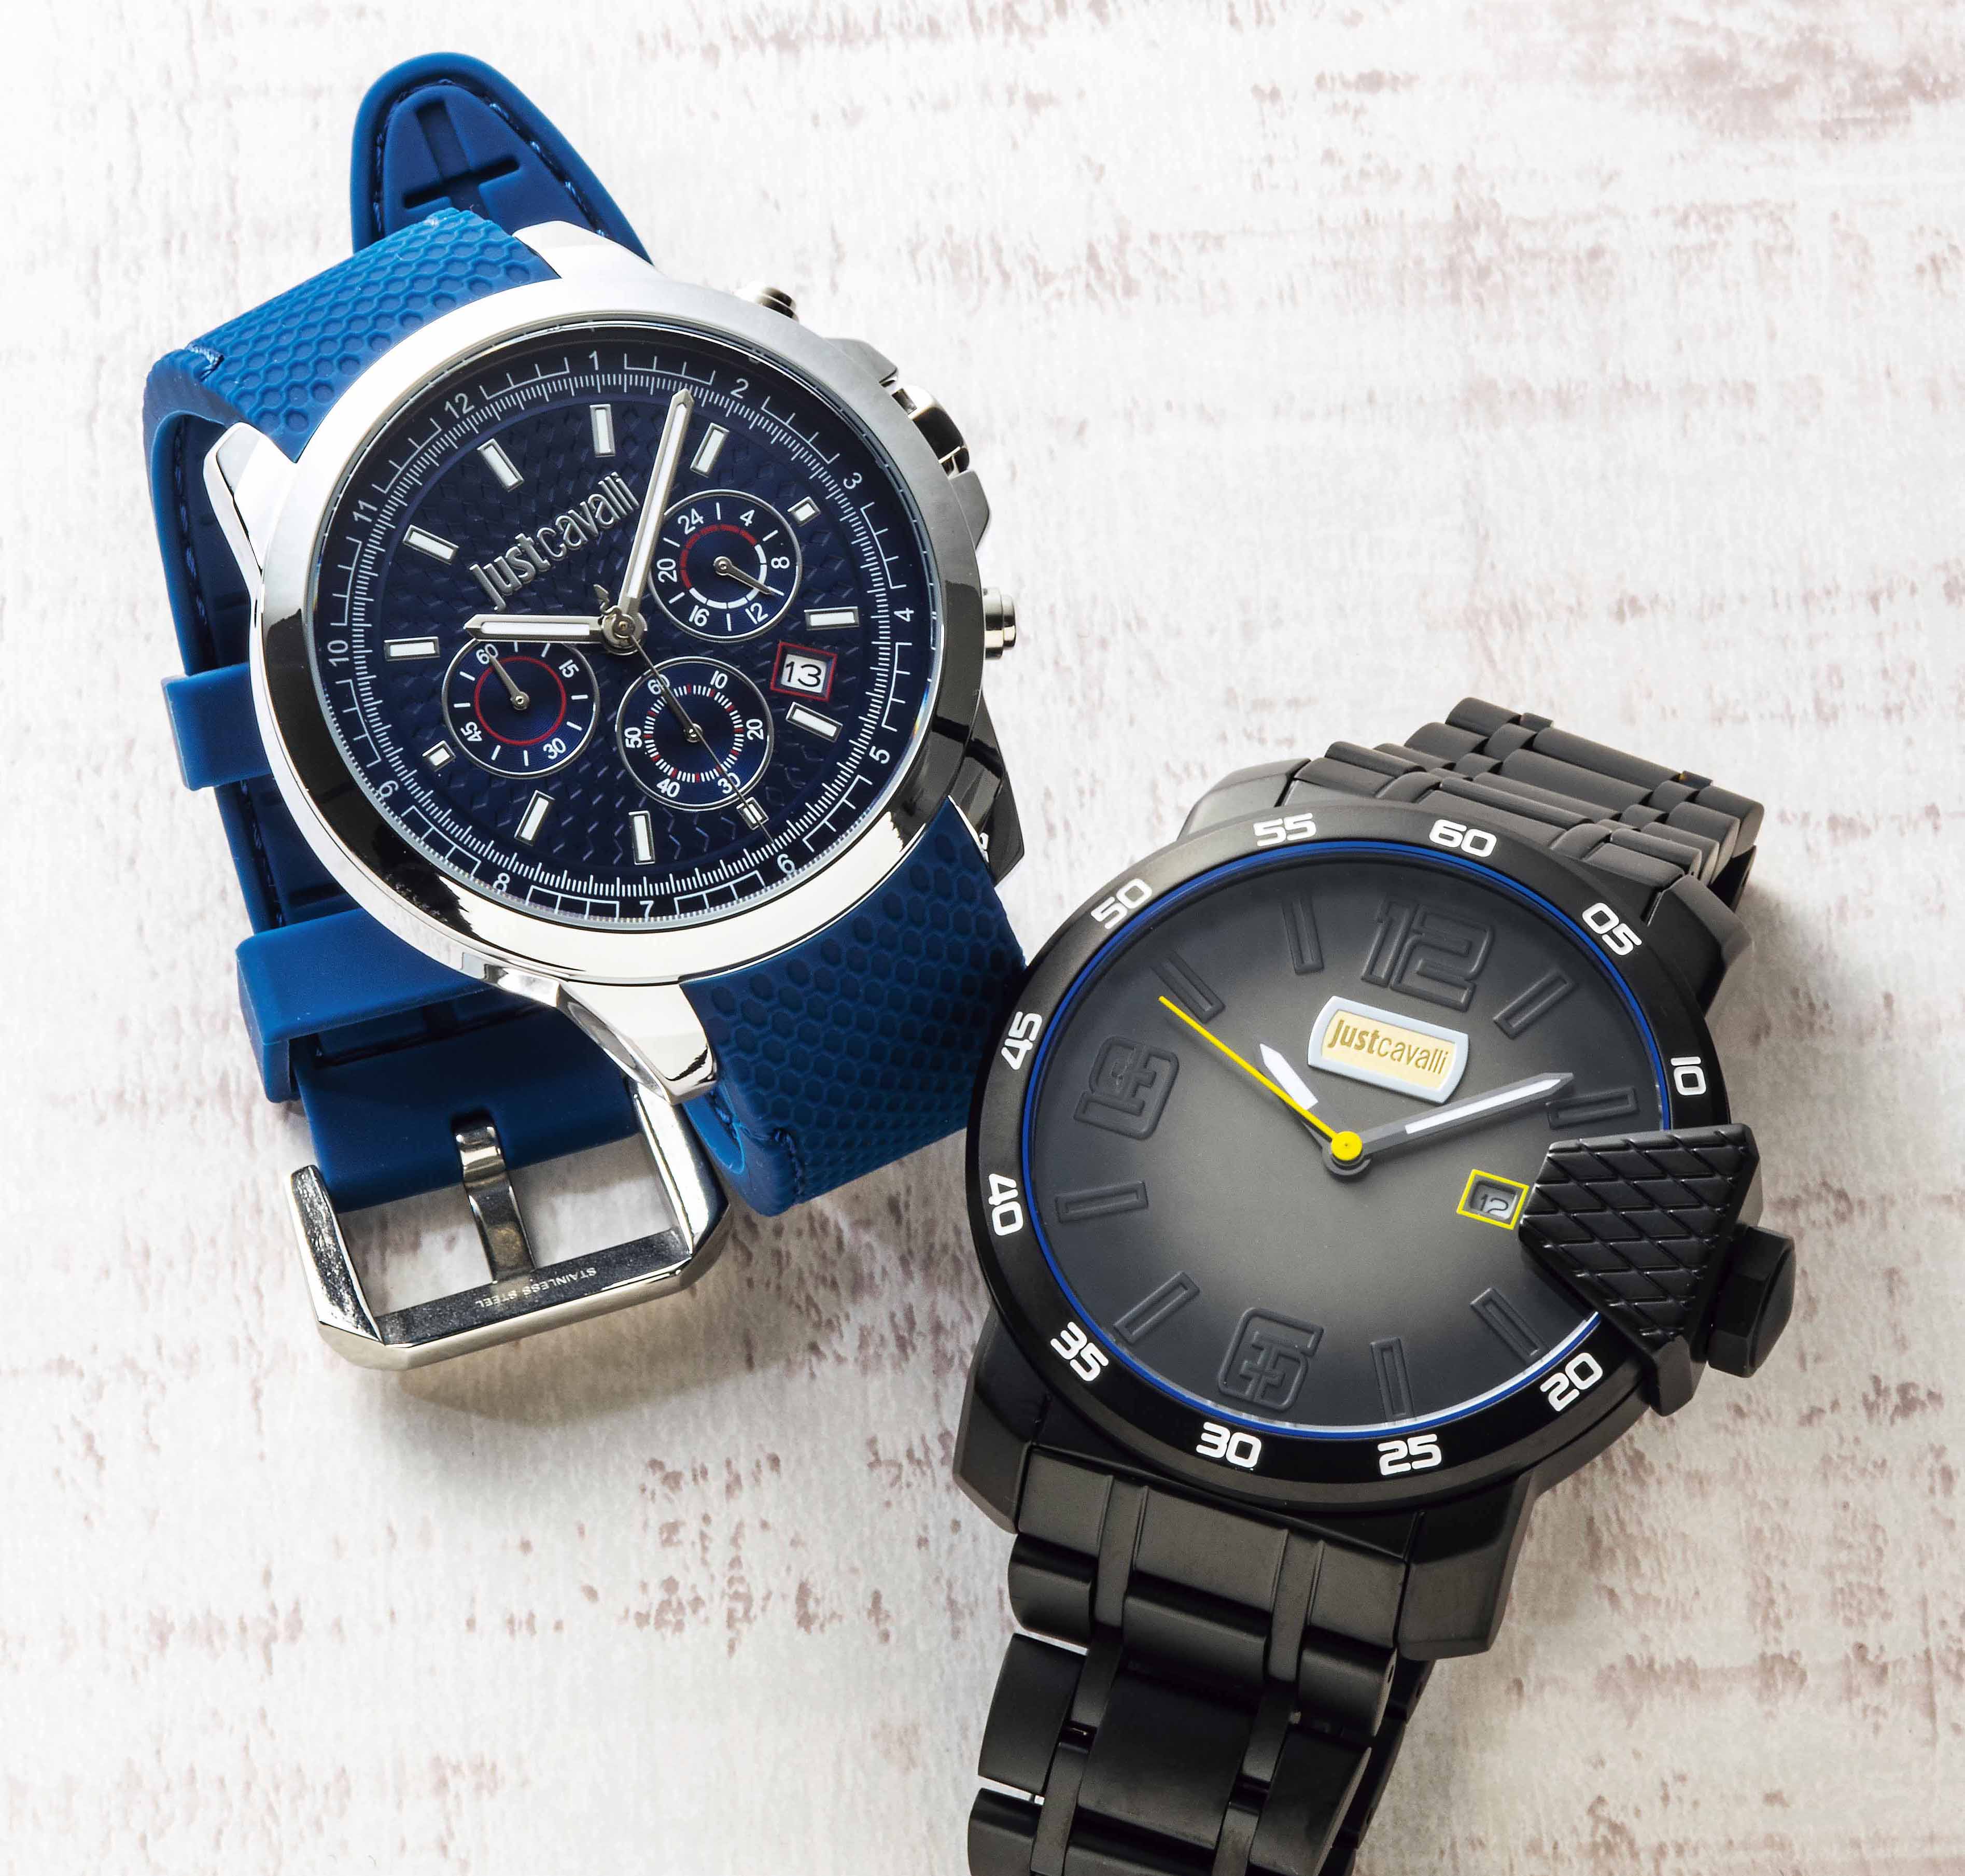 ジャスト カヴァリの腕時計はみんな小粋で魅力的 - HEROES ONLINE